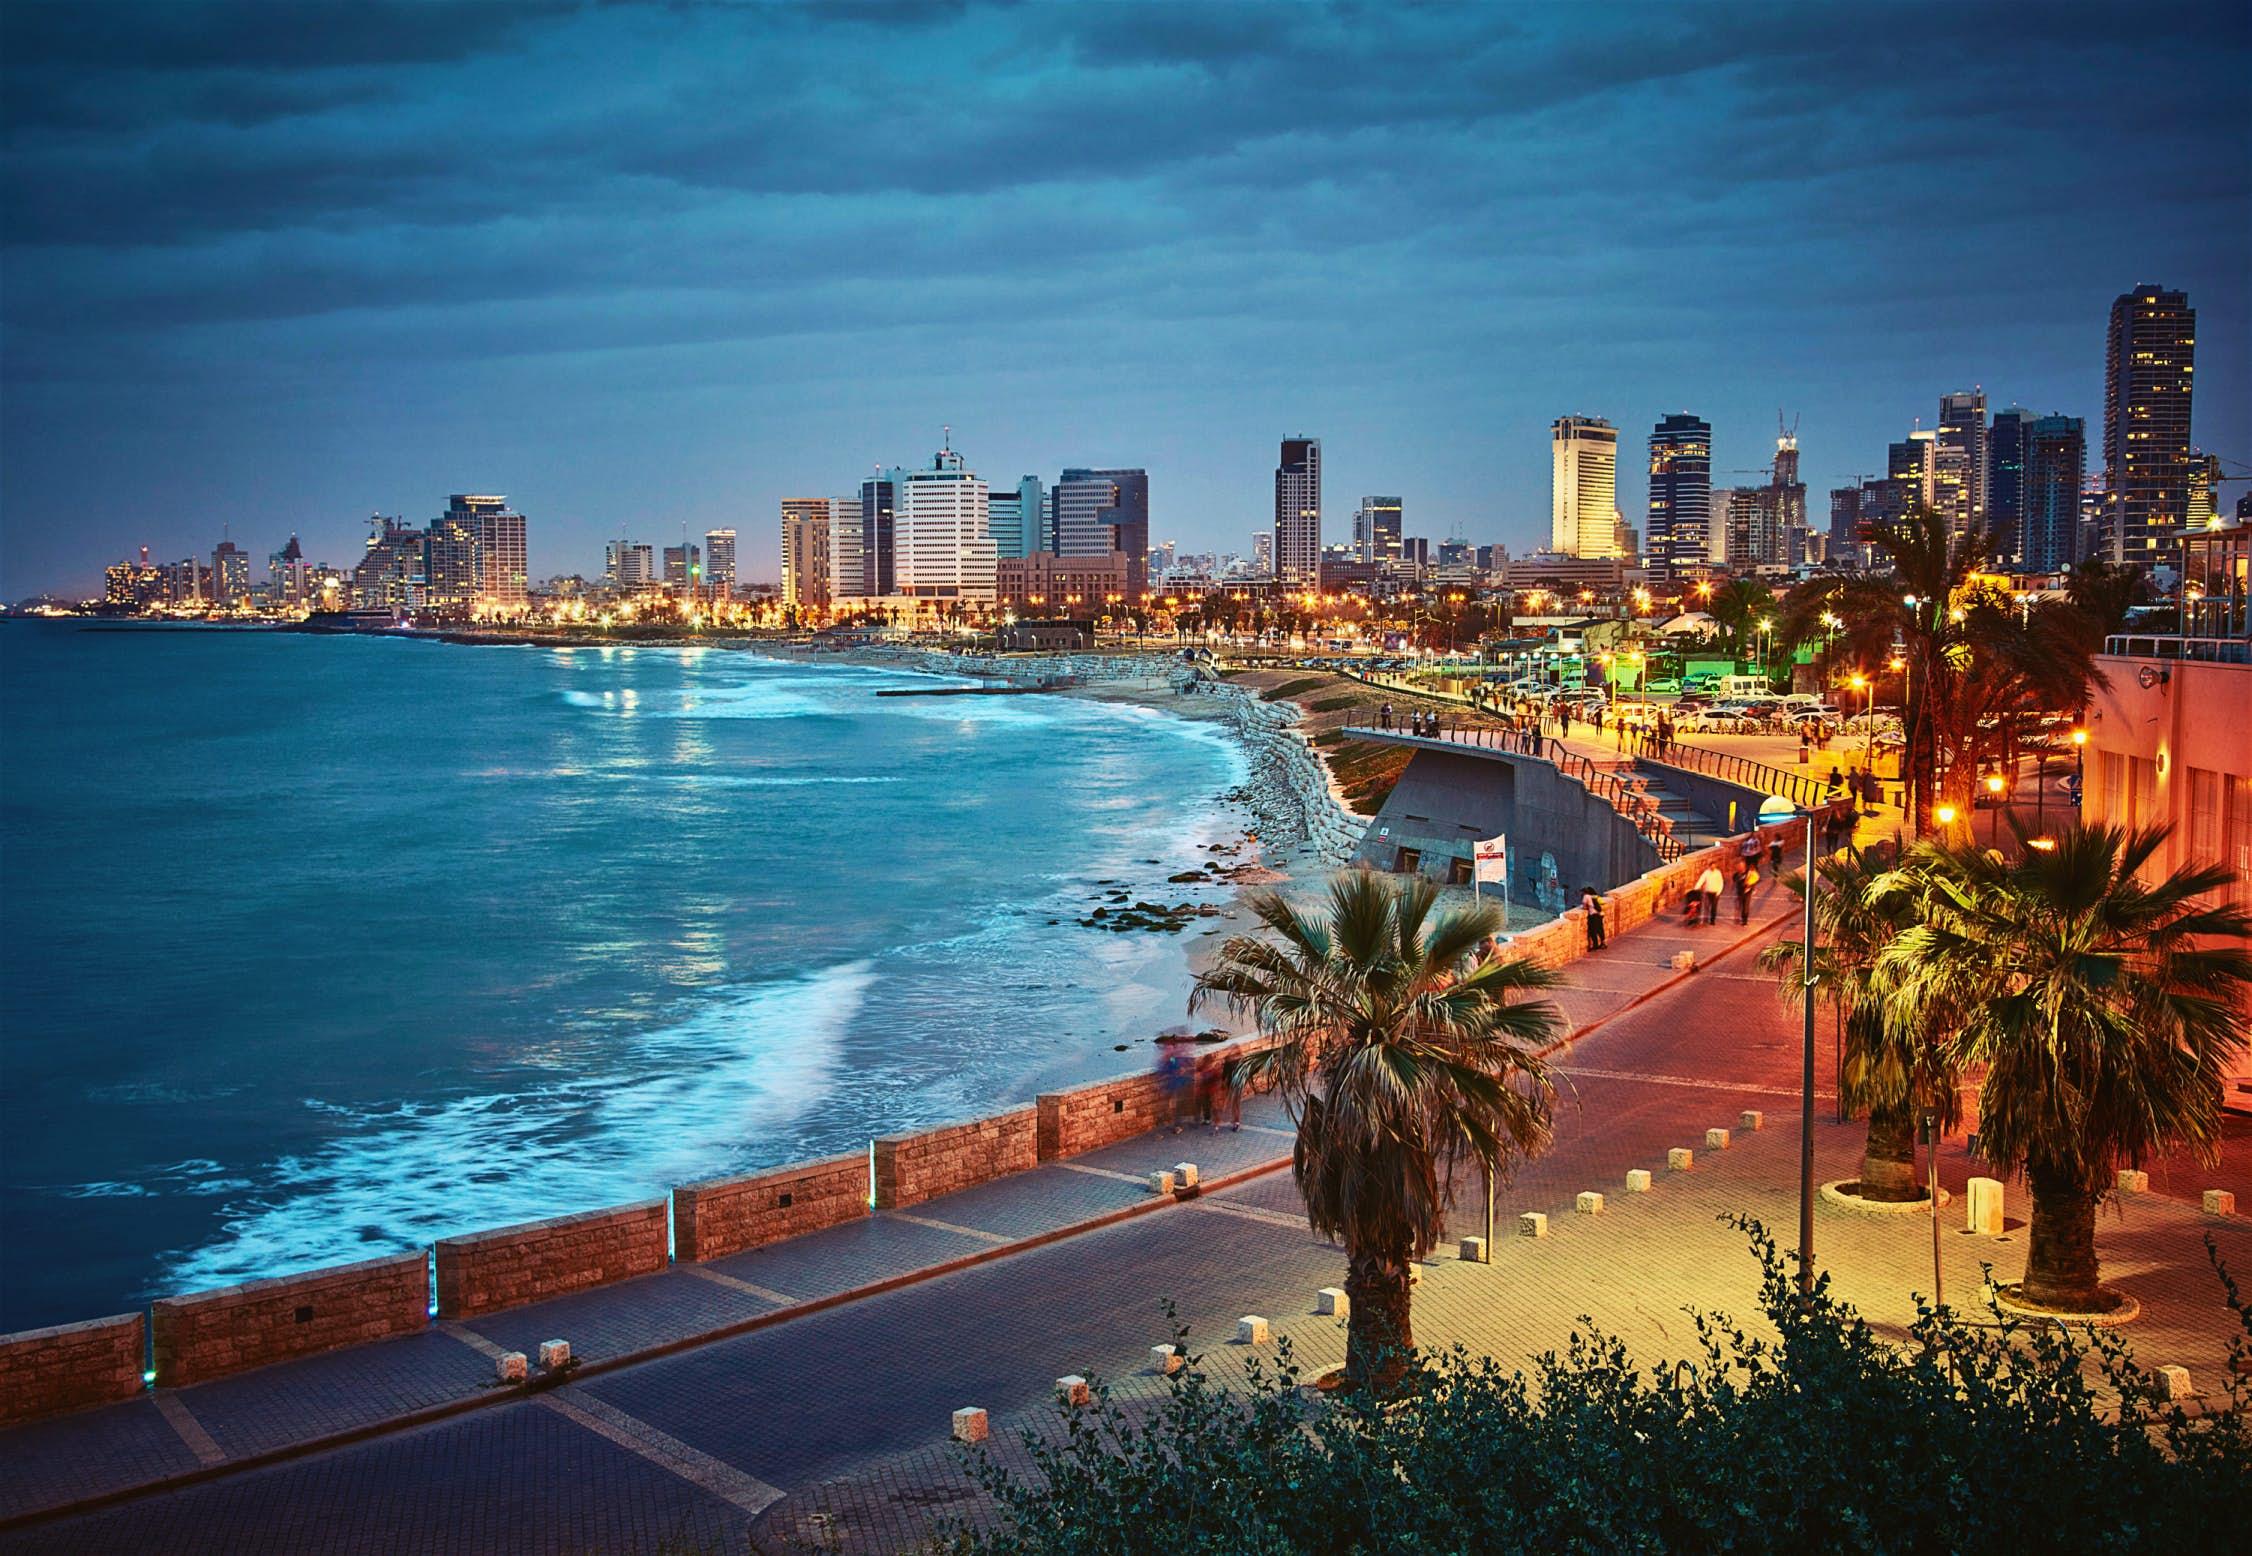 Тель-Авив: описание | Турнавигатор